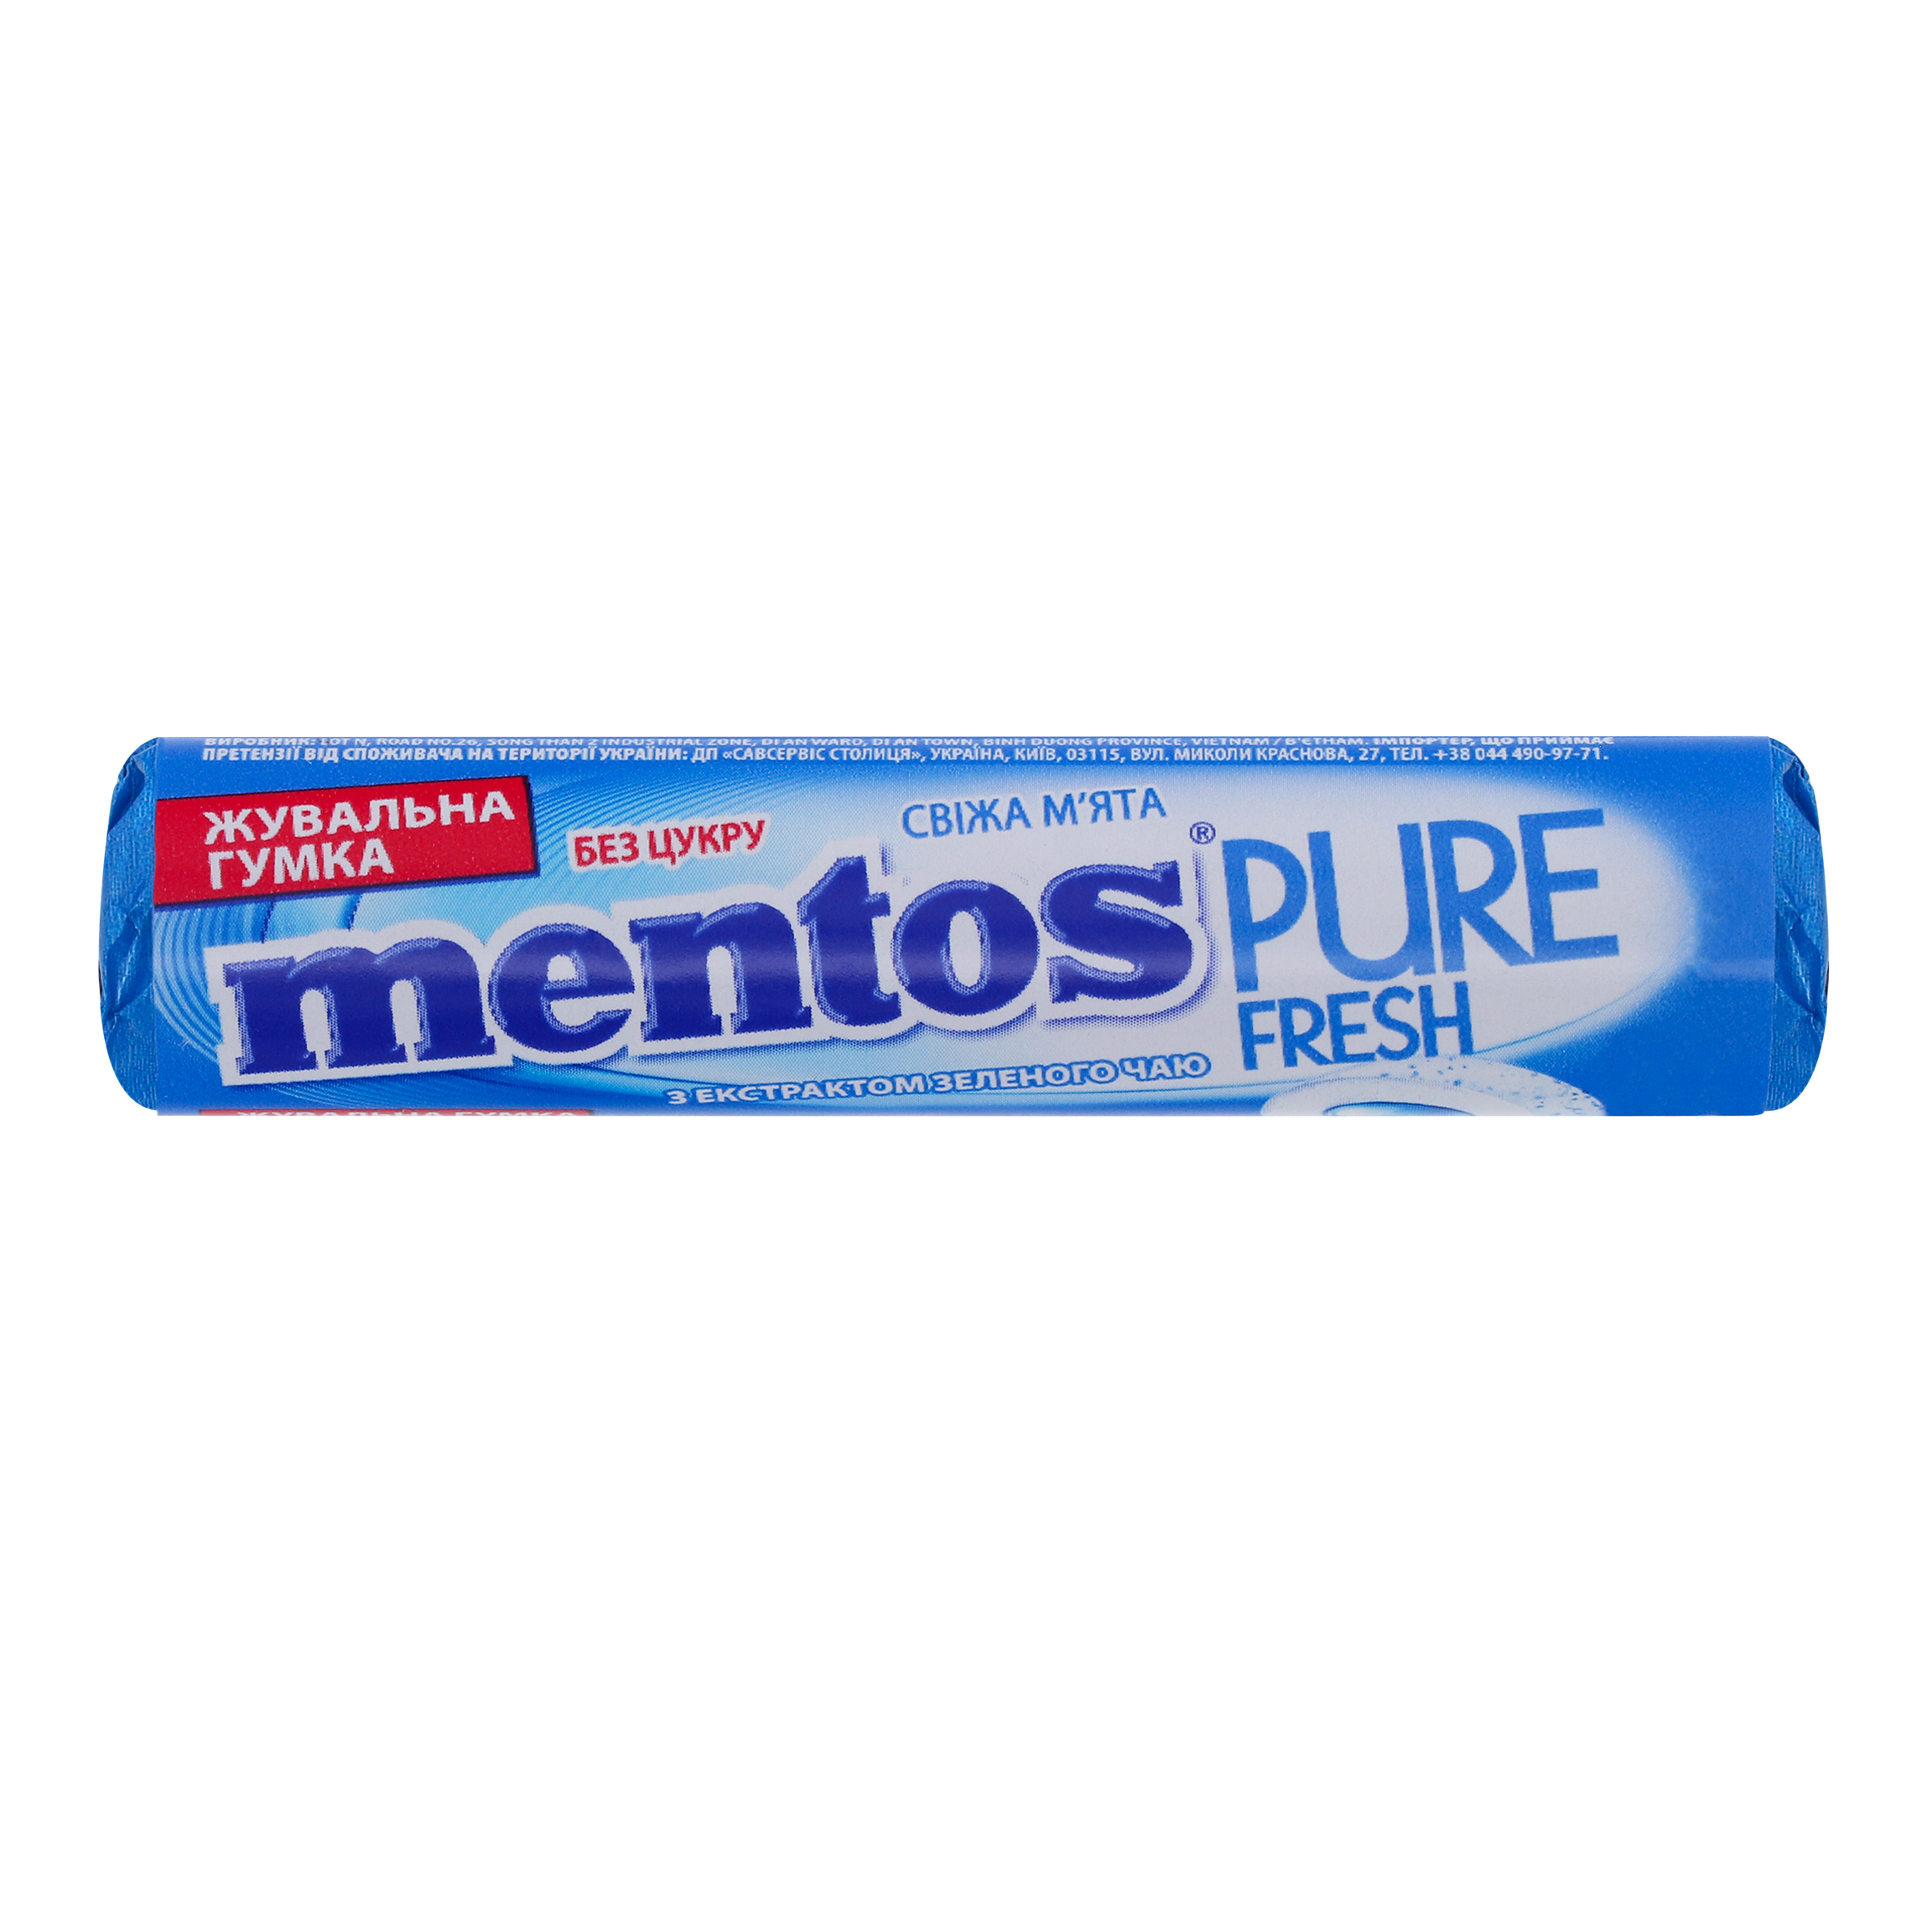 Жувальна гумка Mentos Purefresh Roll м'ята 15,75 г